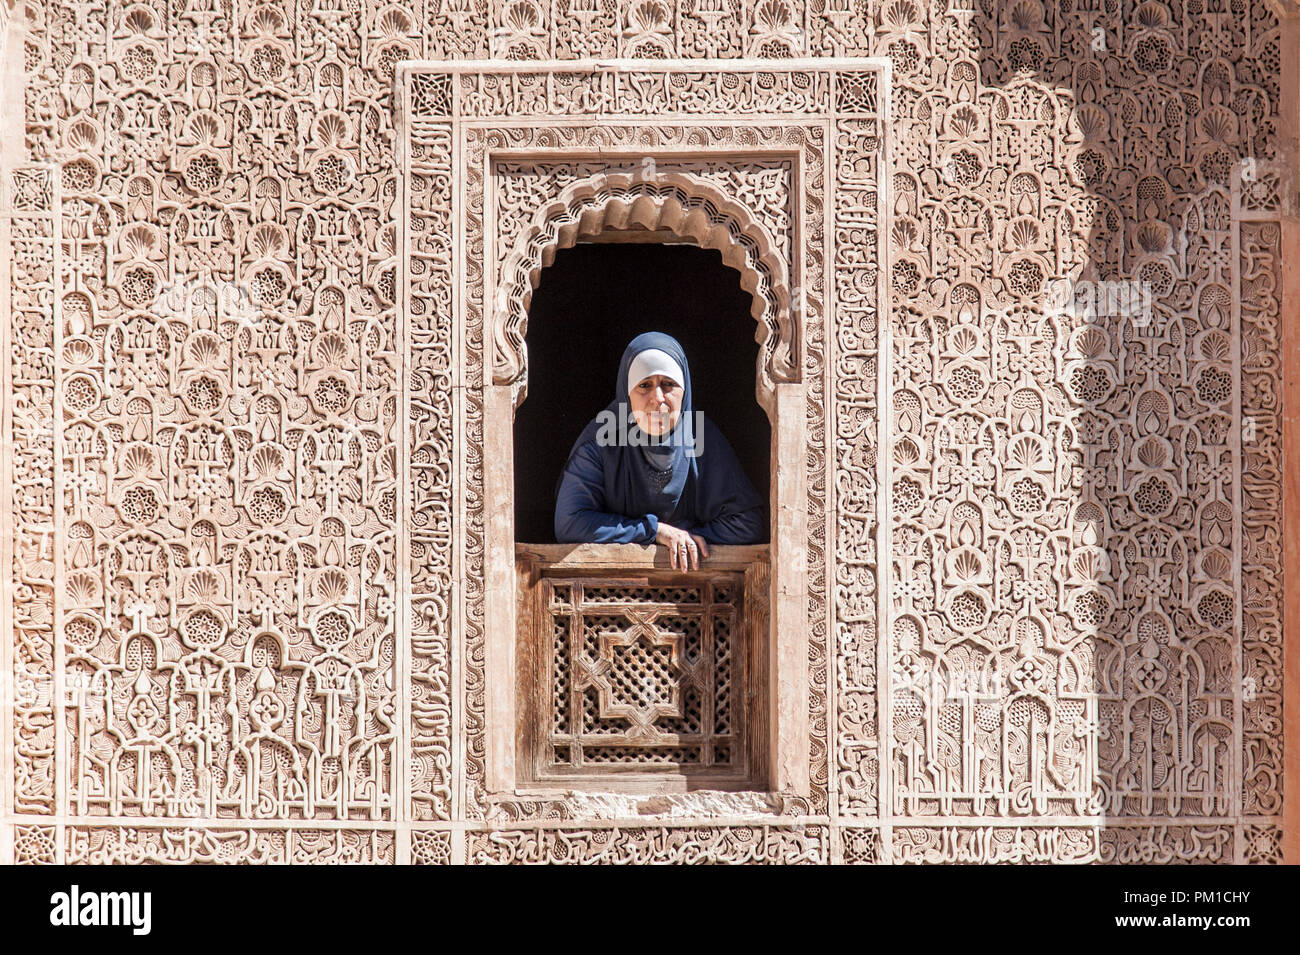 26-02-15, Marrakesch, Marokko. Eine Frau in der traditionellen Kleid sieht durch ein Fenster der Medersa Ben Youssef, oder der Sohn von Joseph an der Schule. Foto © Sim Stockfoto